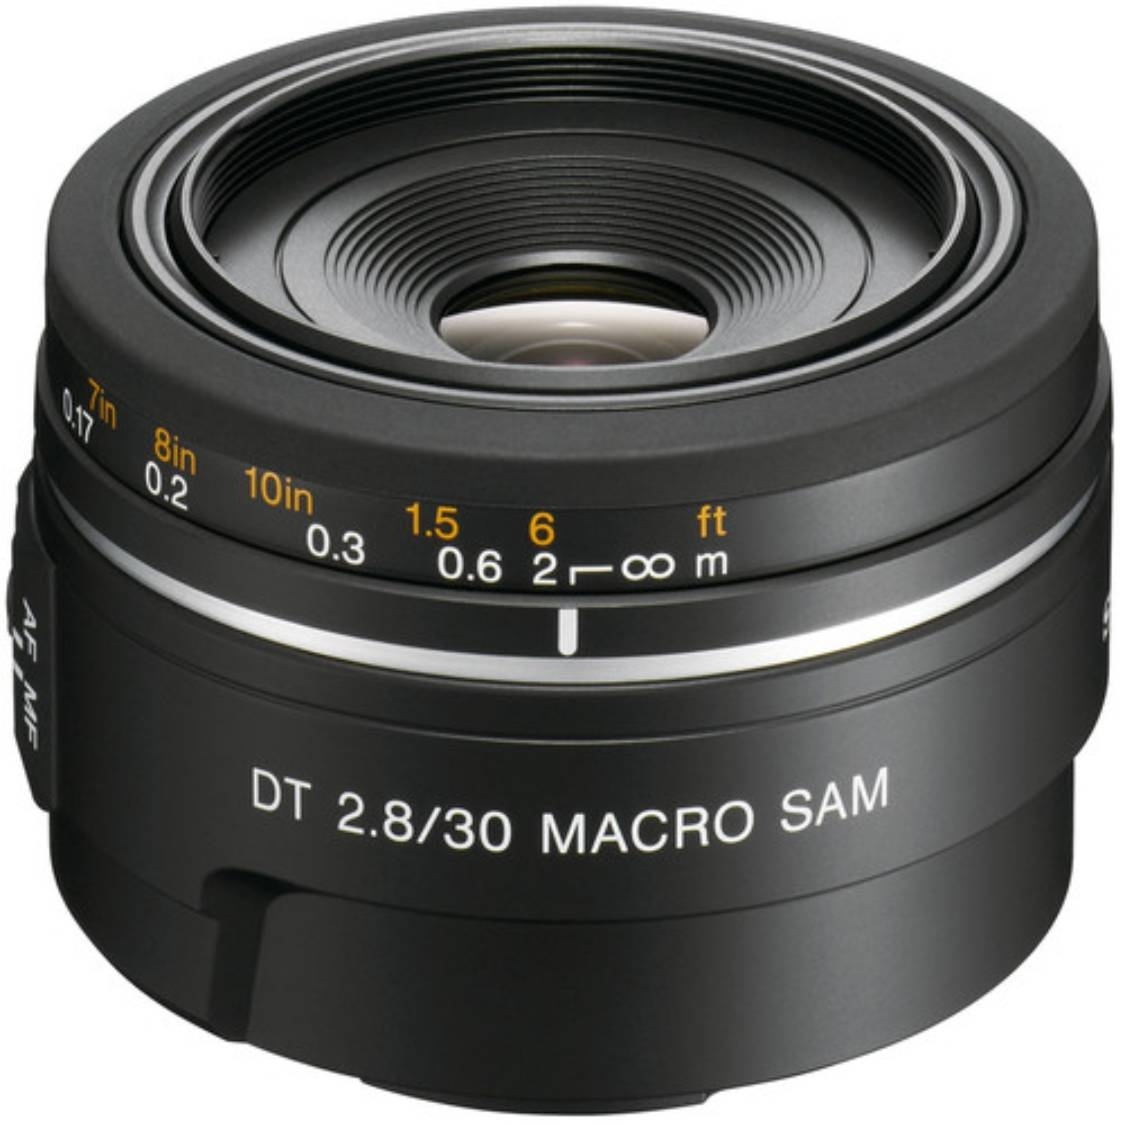 Sony DT 30mm f/2.8 Macro SAM Lens - Open Box